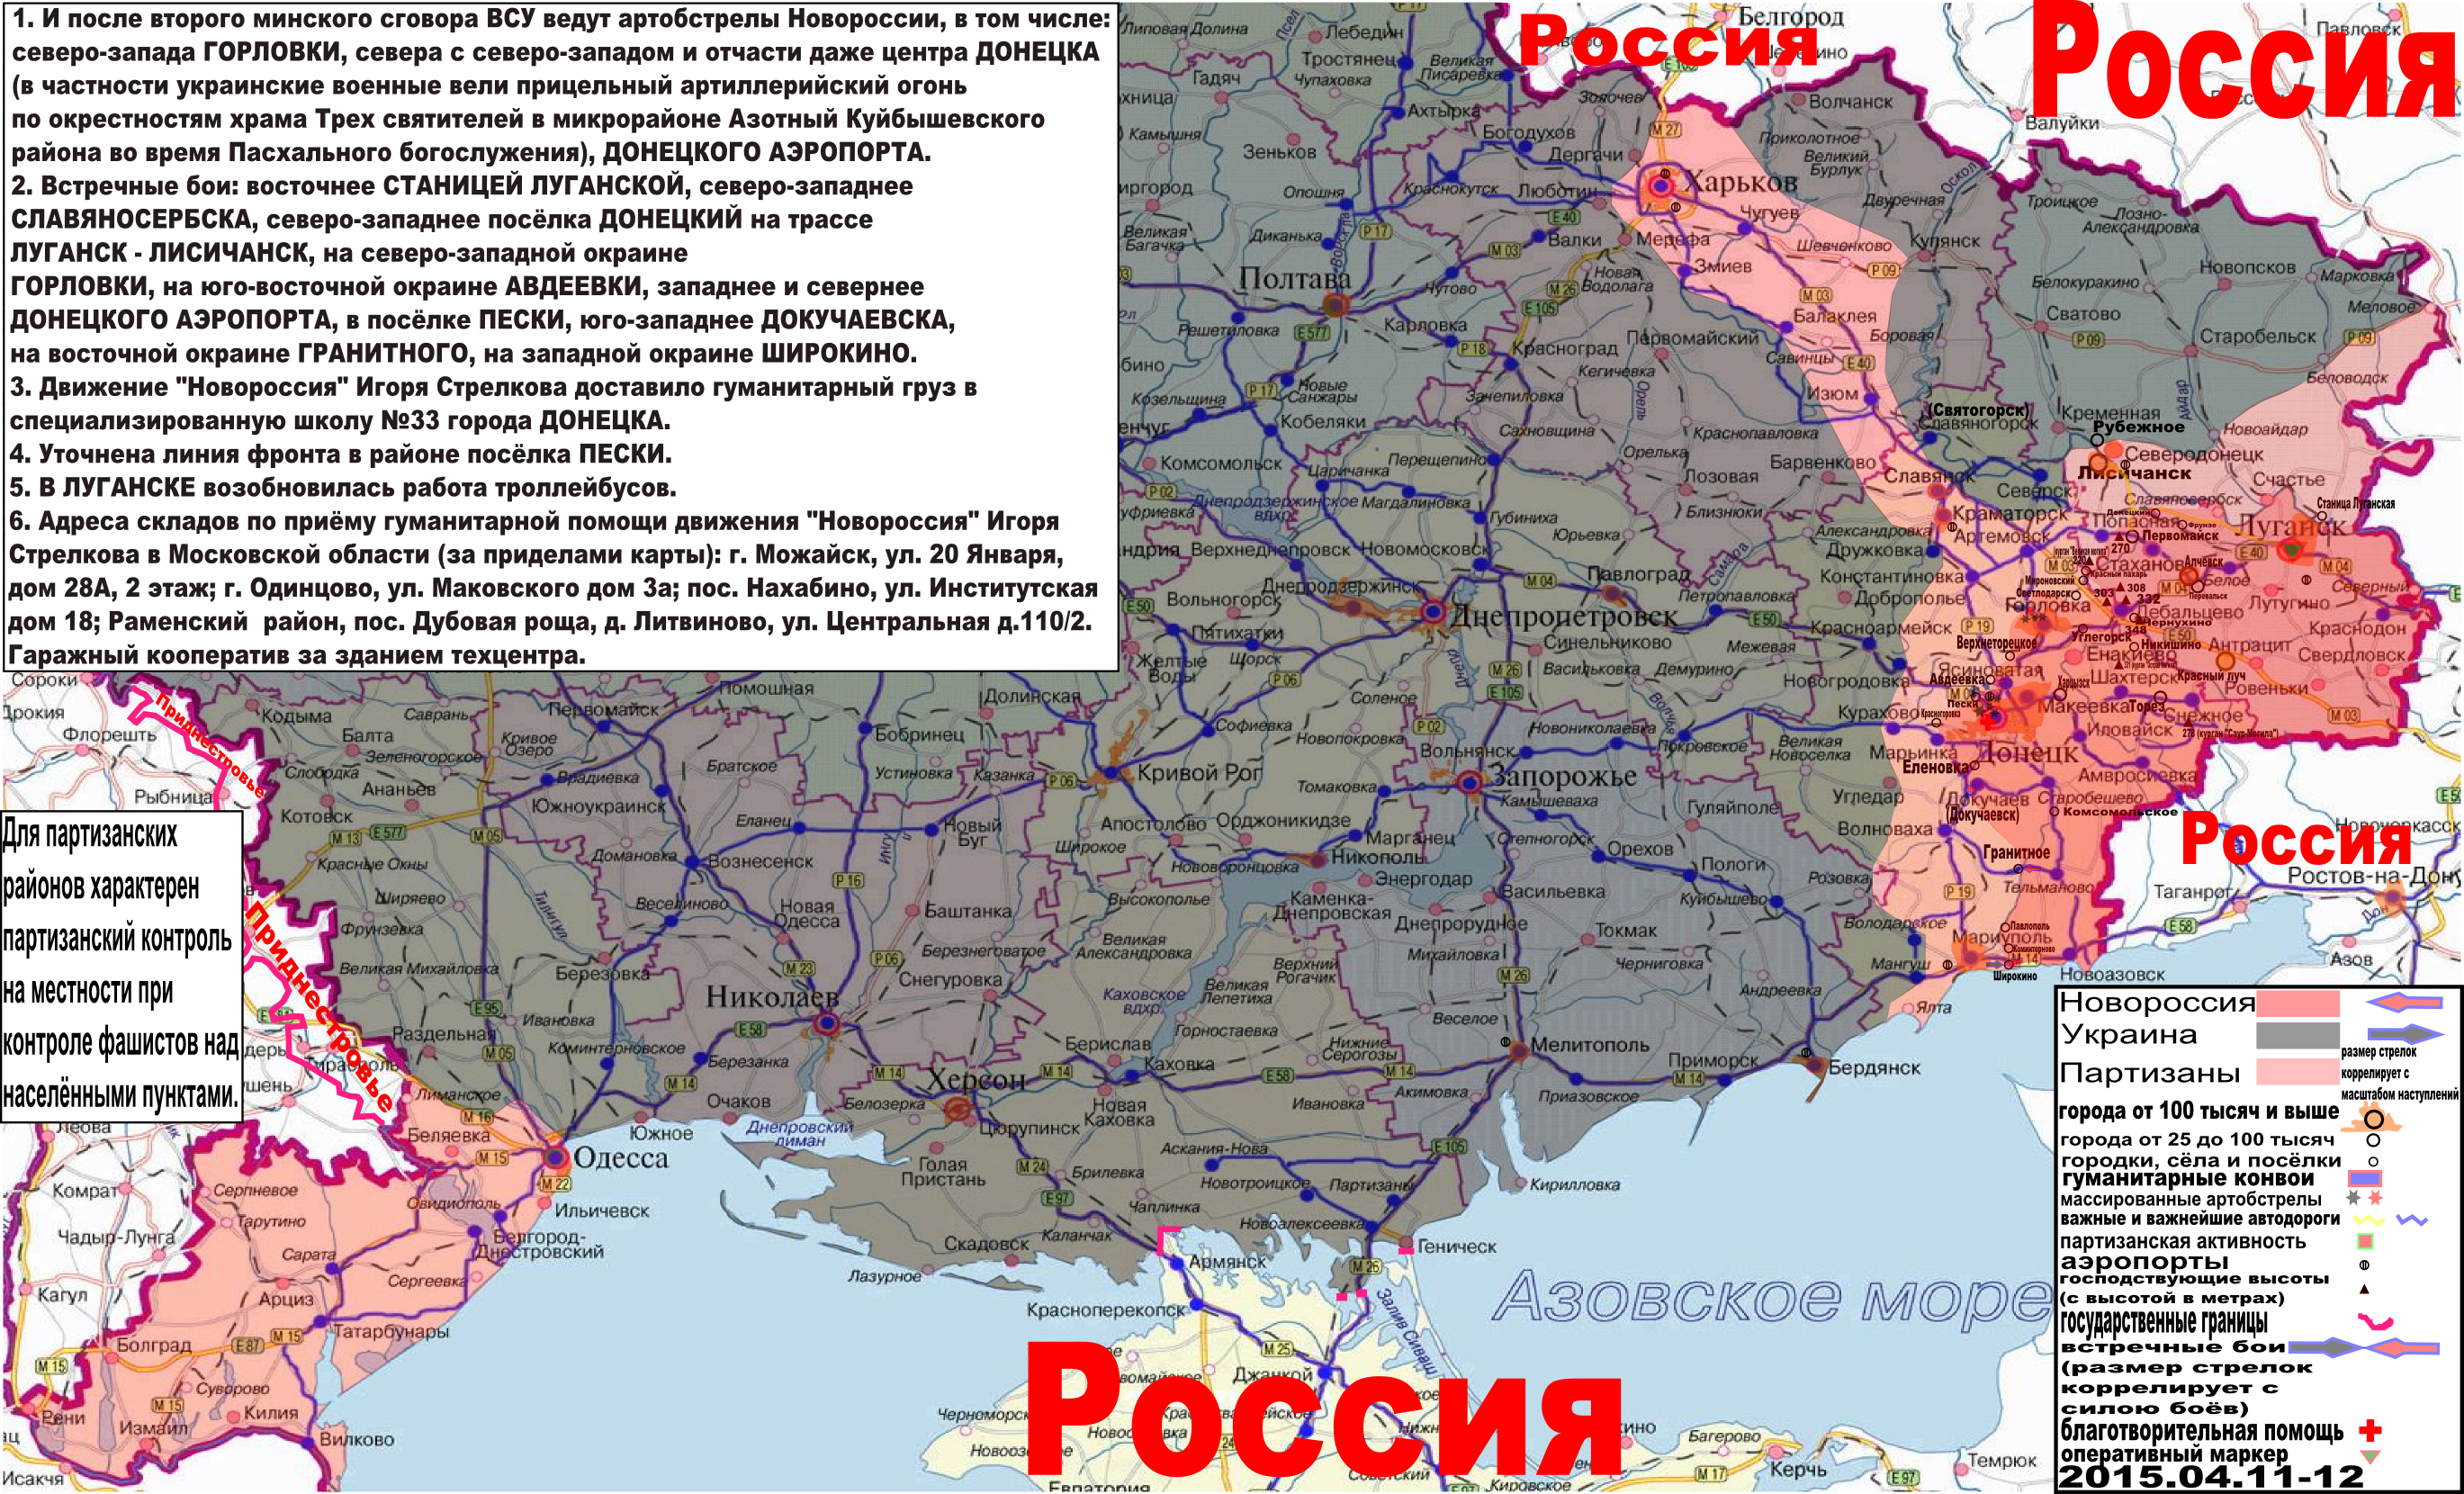 Карта боевых действий и гуманитарных вестей Новороссии с партизанскими районами за 11-12 апреля 2015